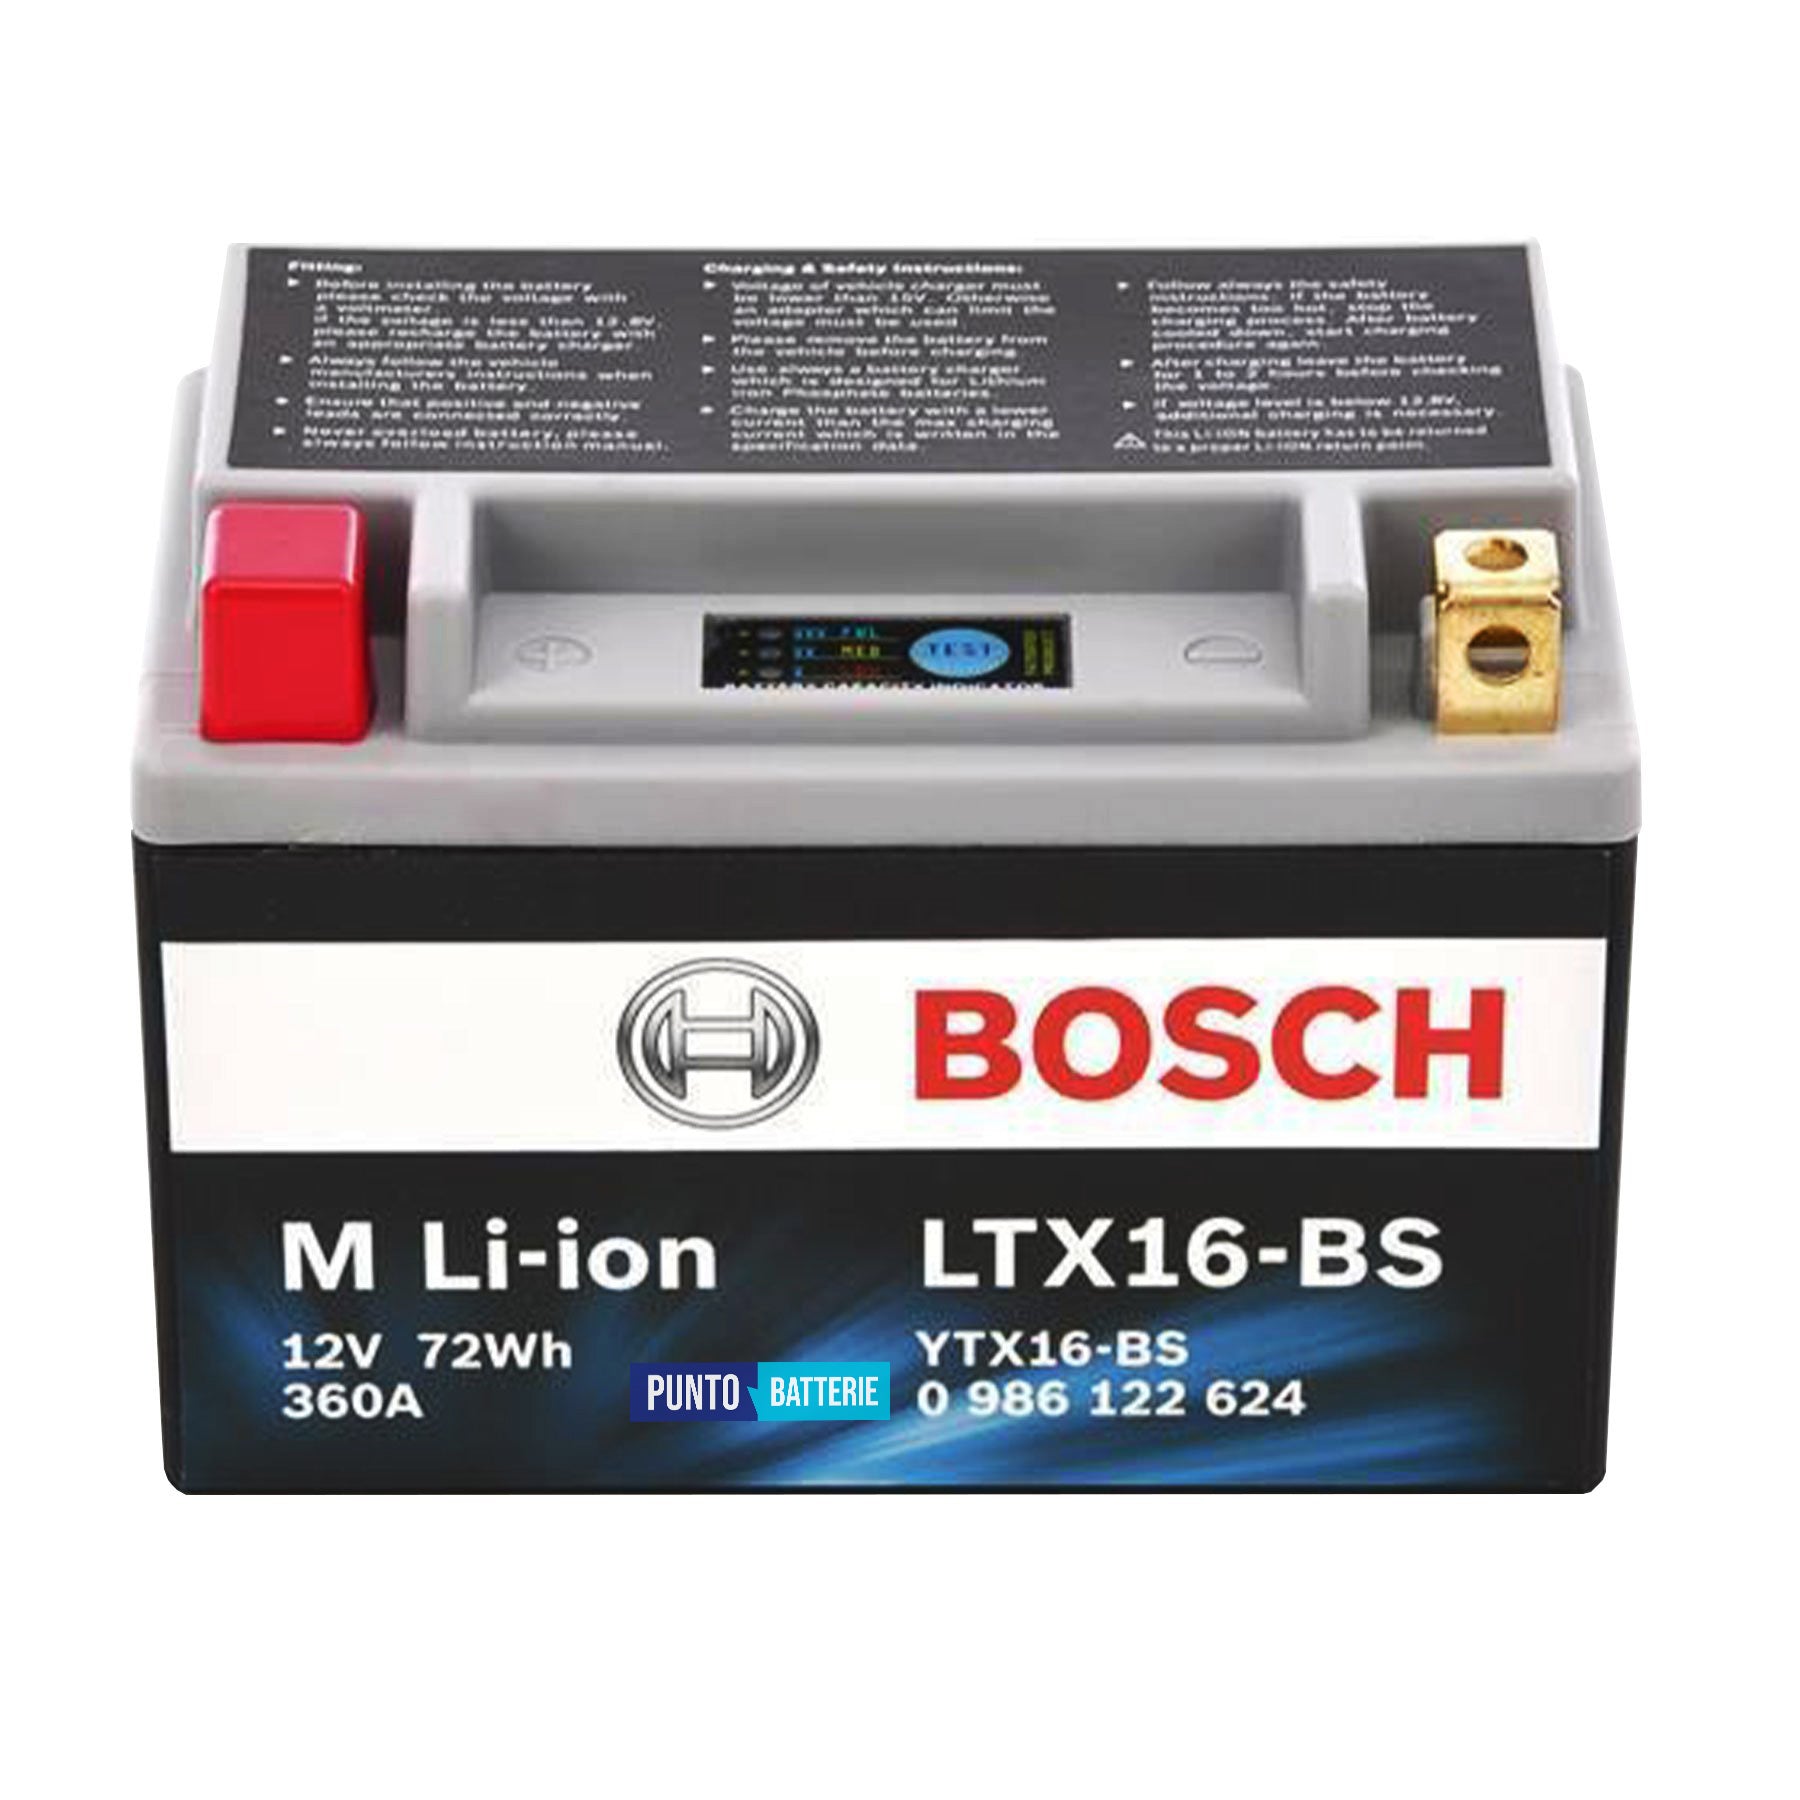 Batteria originale Bosch M Li-ion LTX16-BS, dimensioni 150 x 87 x 143, polo positivo a sinistra, 12 volt, 6 amperora, 360 ampere. Batteria per moto, scooter e powersport.